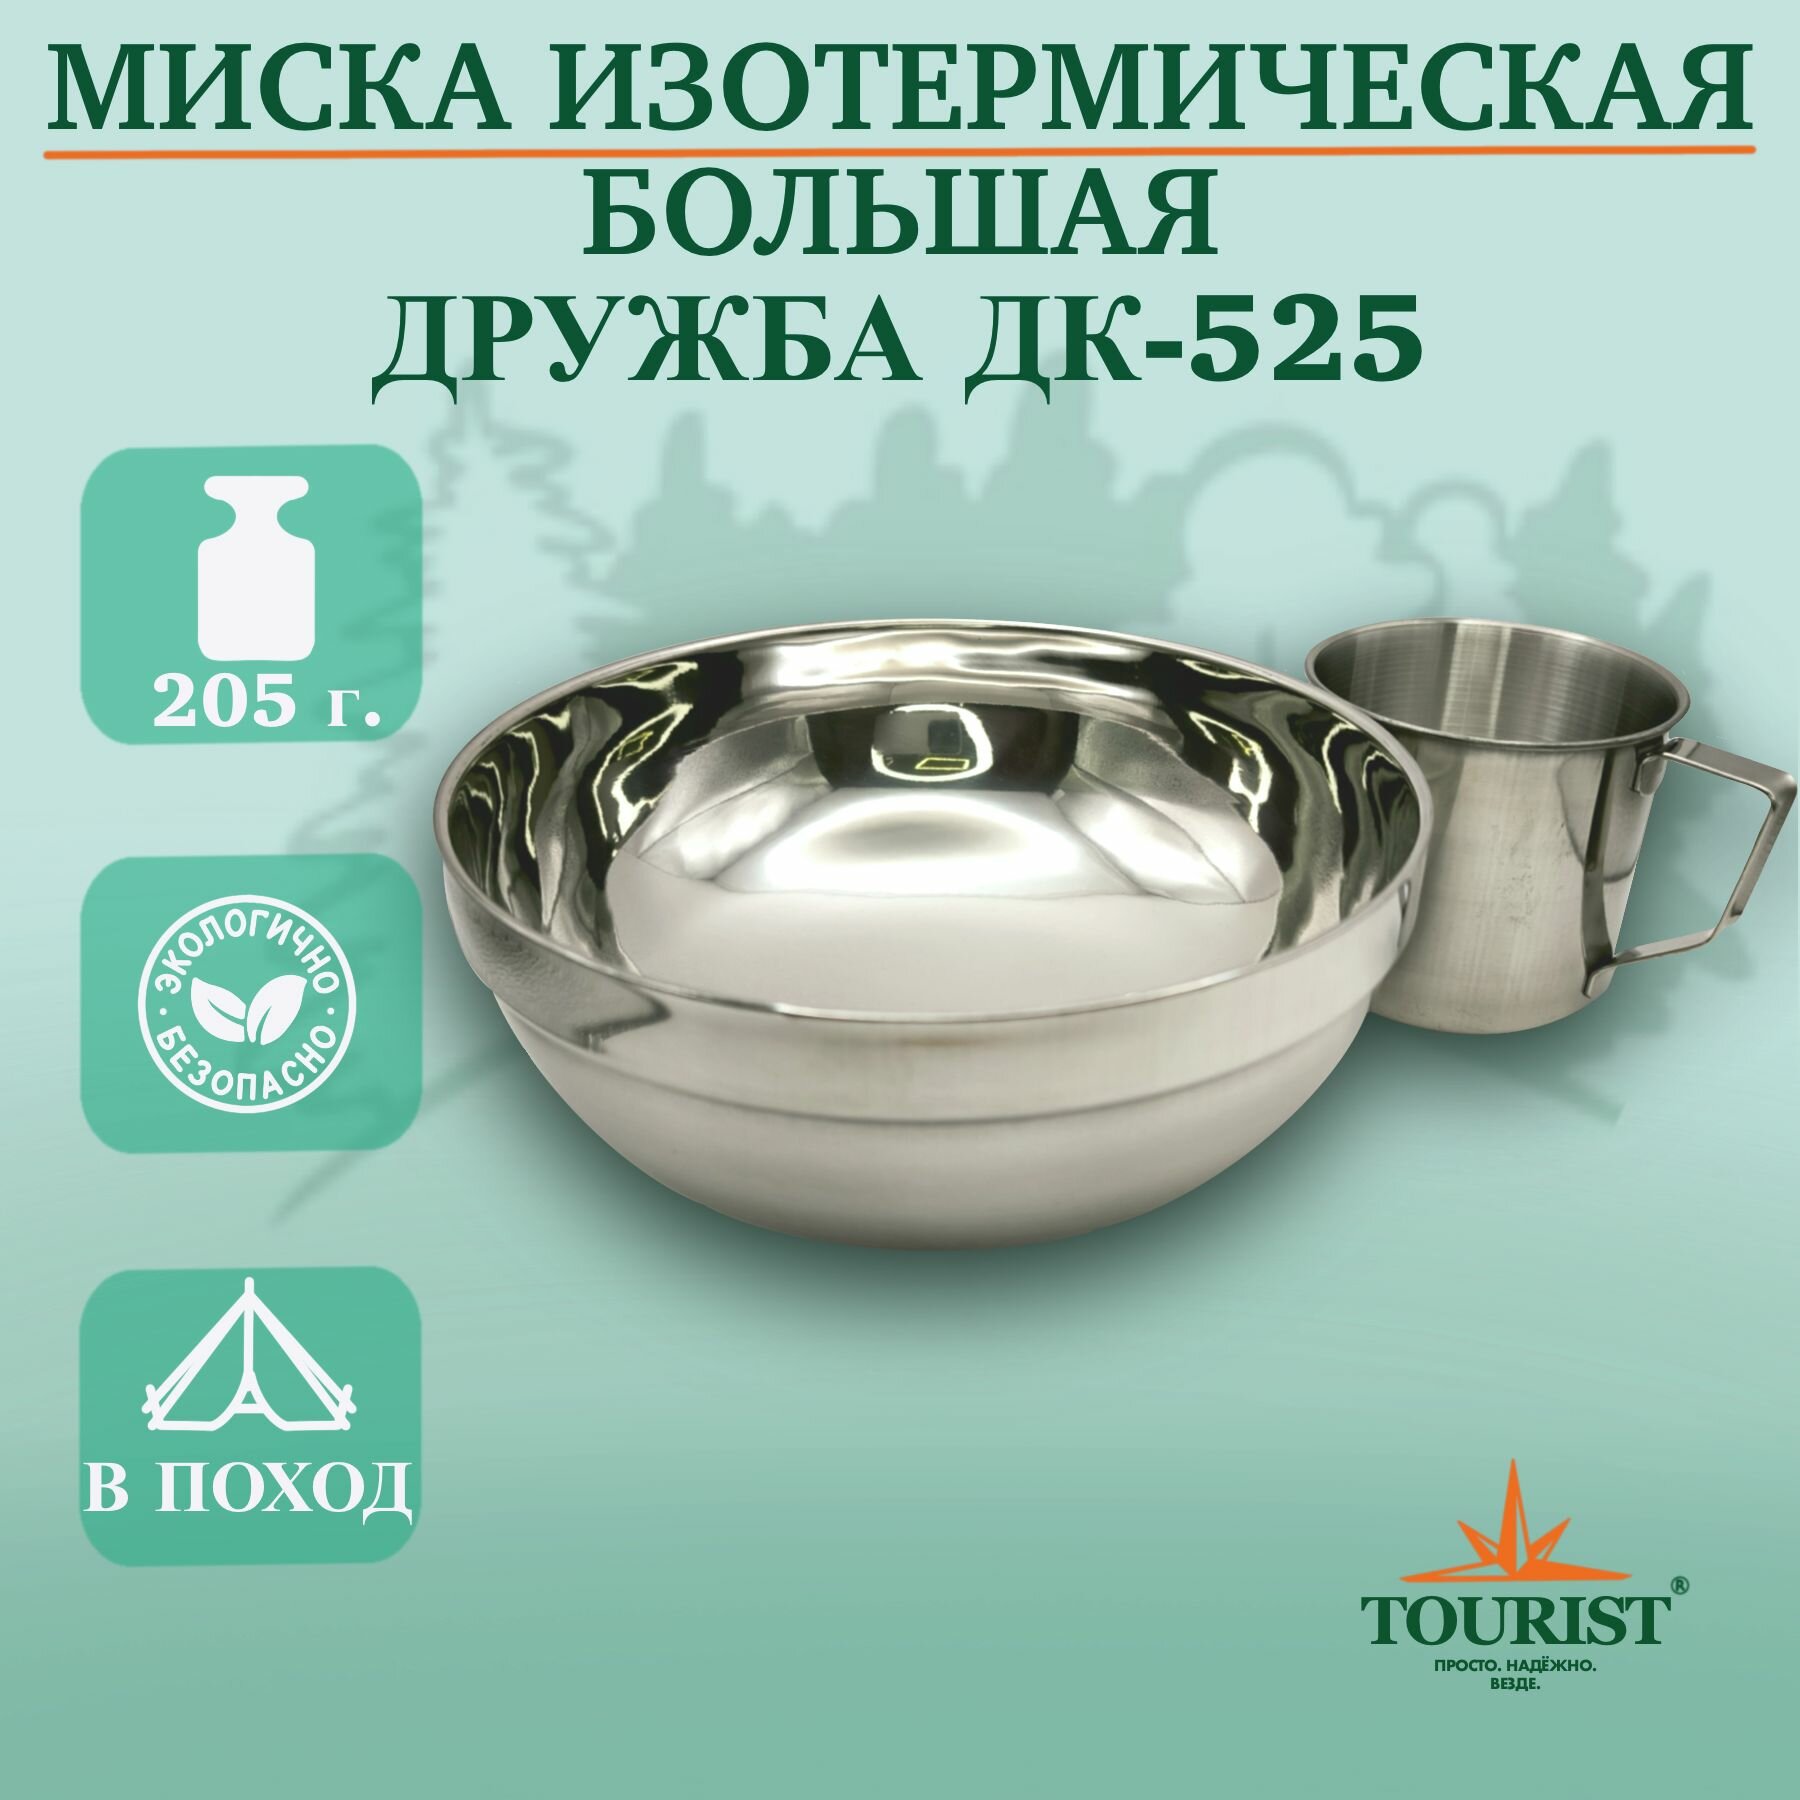 Изотермическая тарелка миска походная туристическая дружба ДК 525 объем 1,6 литра для рыбалки, охоты, туризма и выезда на пикник